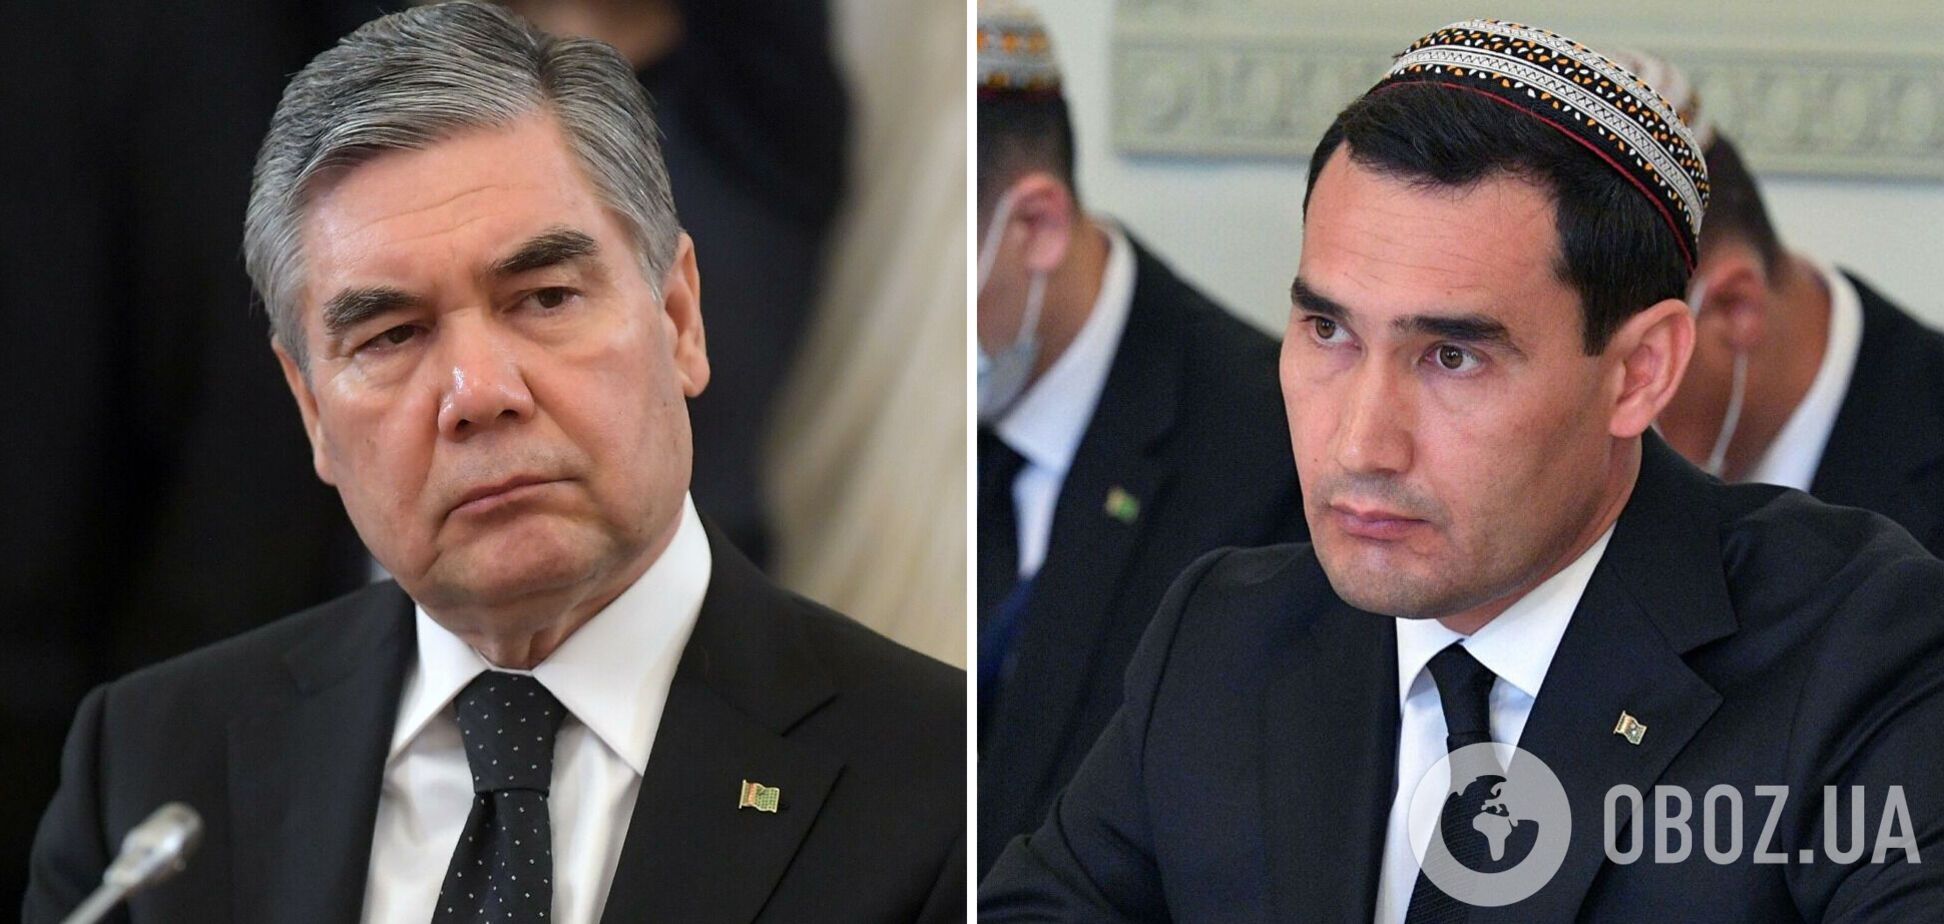 Президент Туркменистана Бердымухамедов решил передать власть сыну: в стране назначены выборы